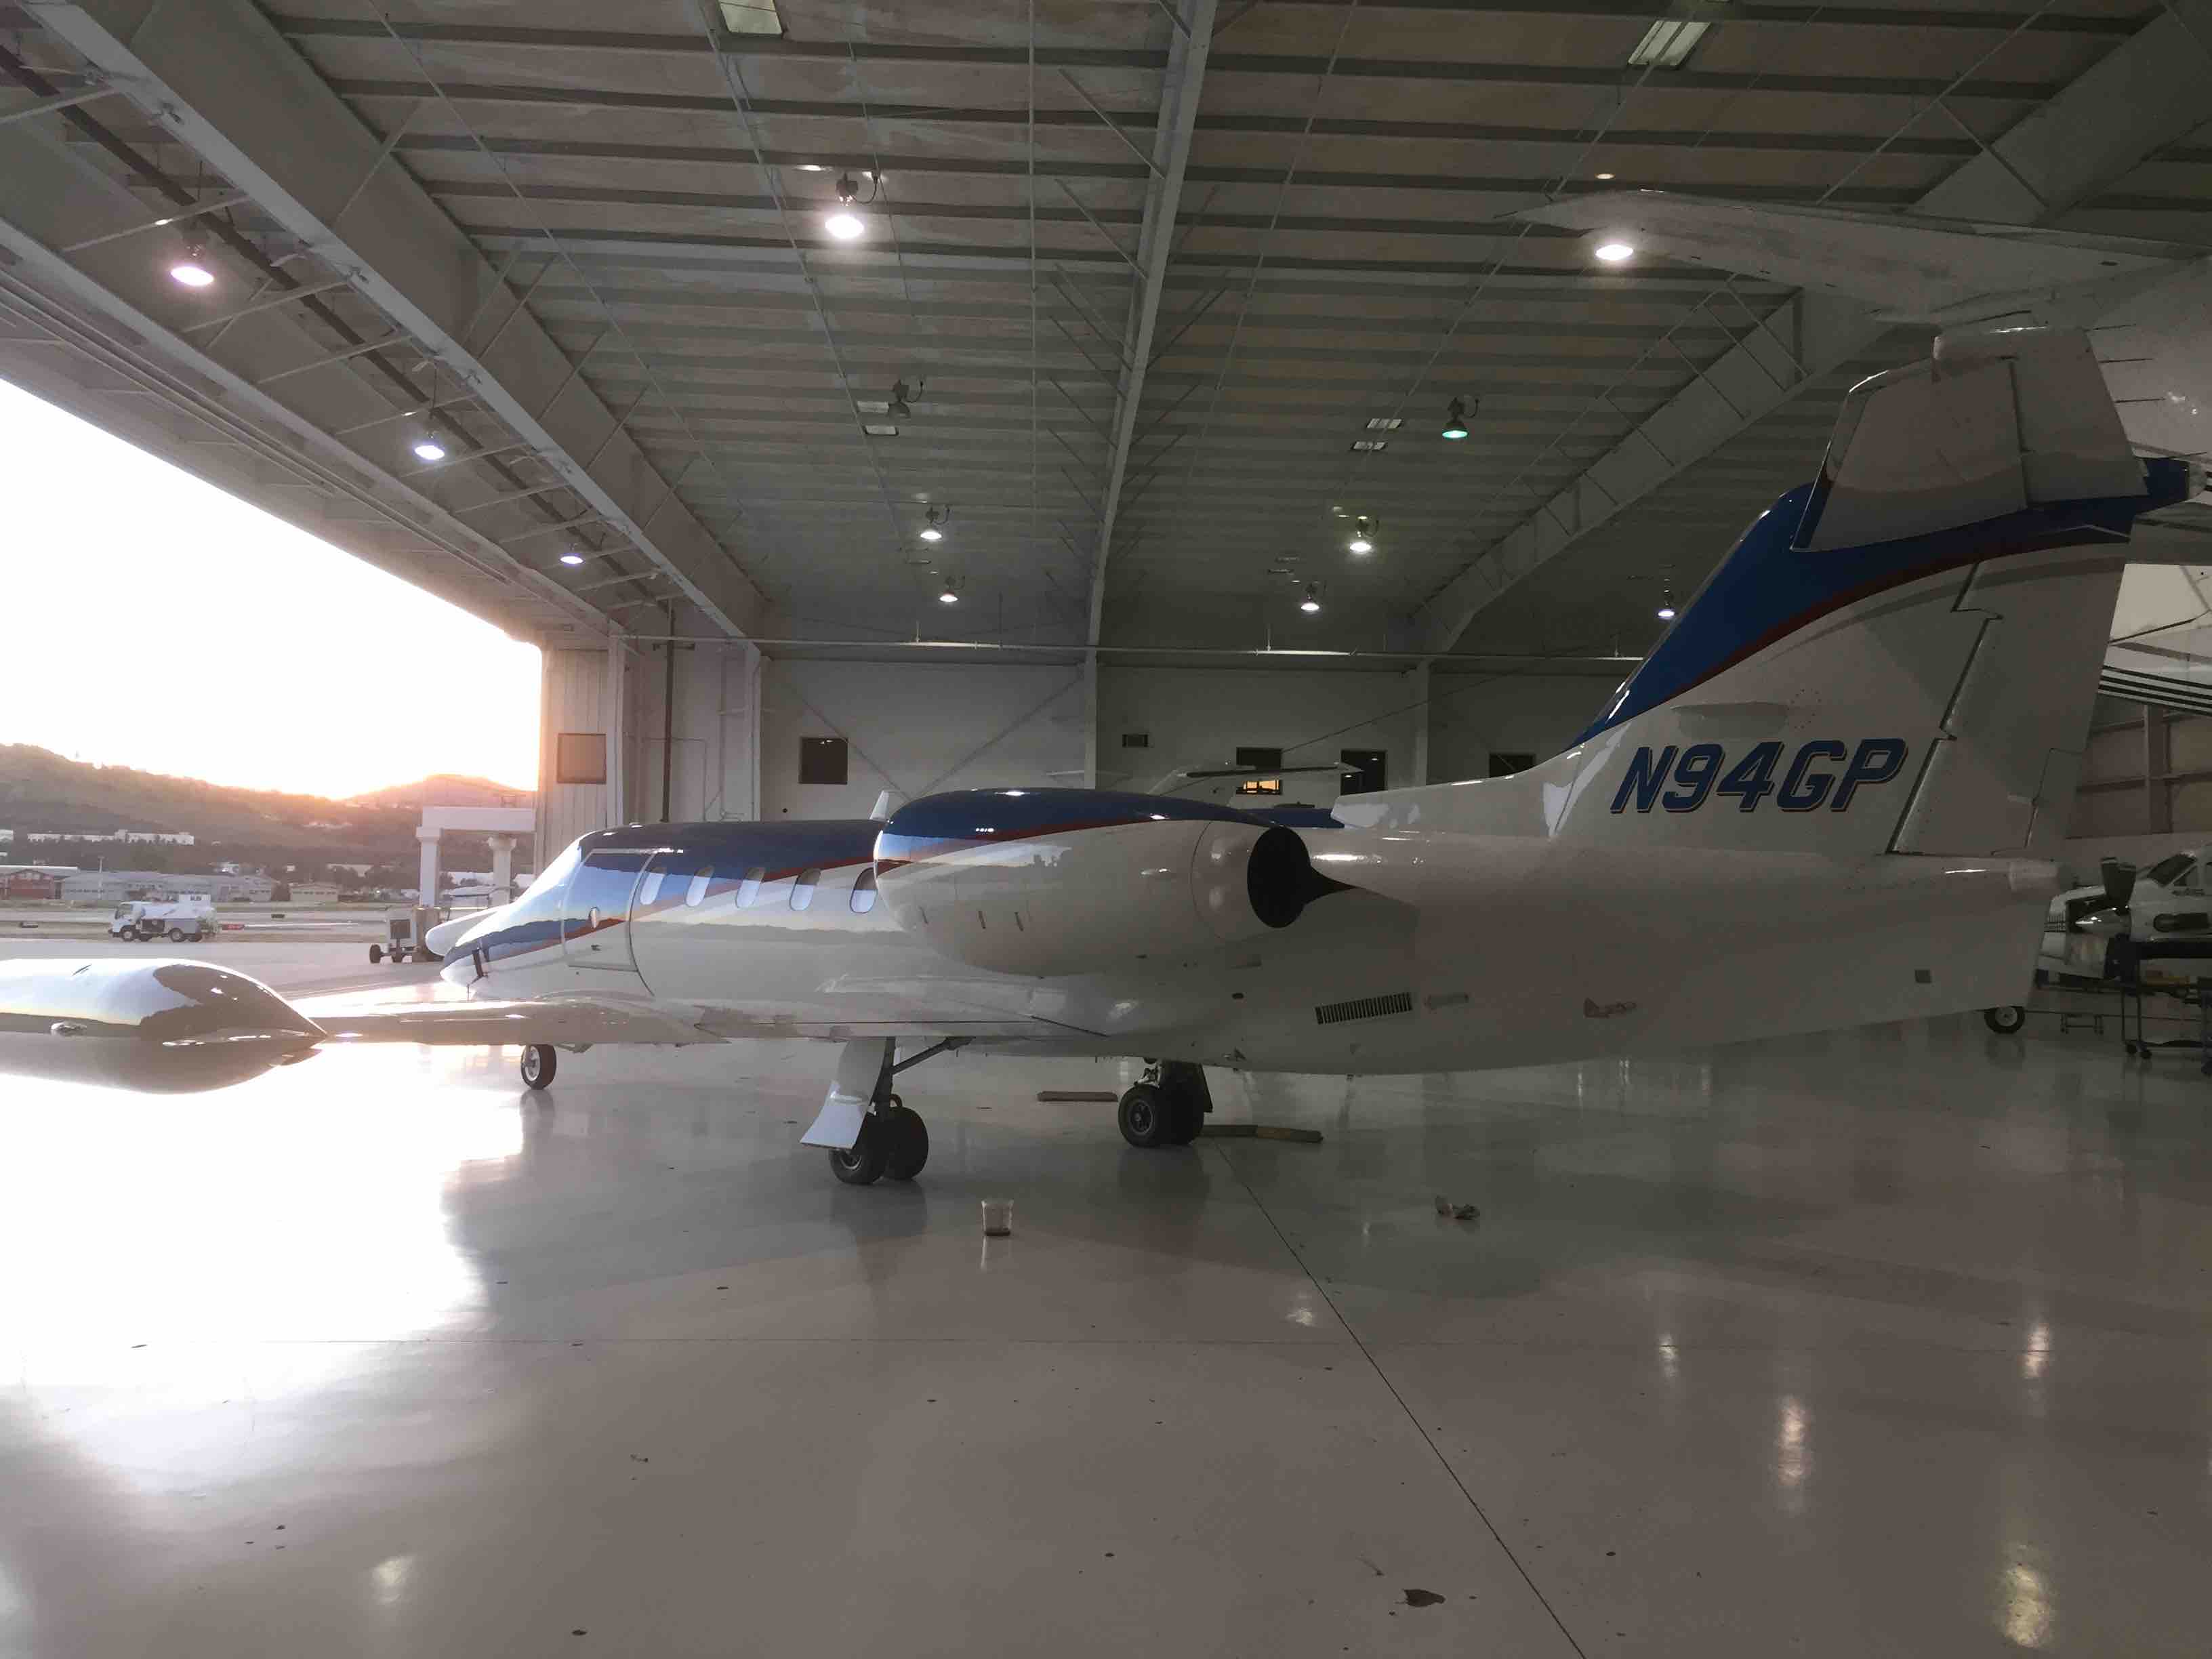 Ver N94GP-11 en el hangar de Aeromedevac en El Cajón